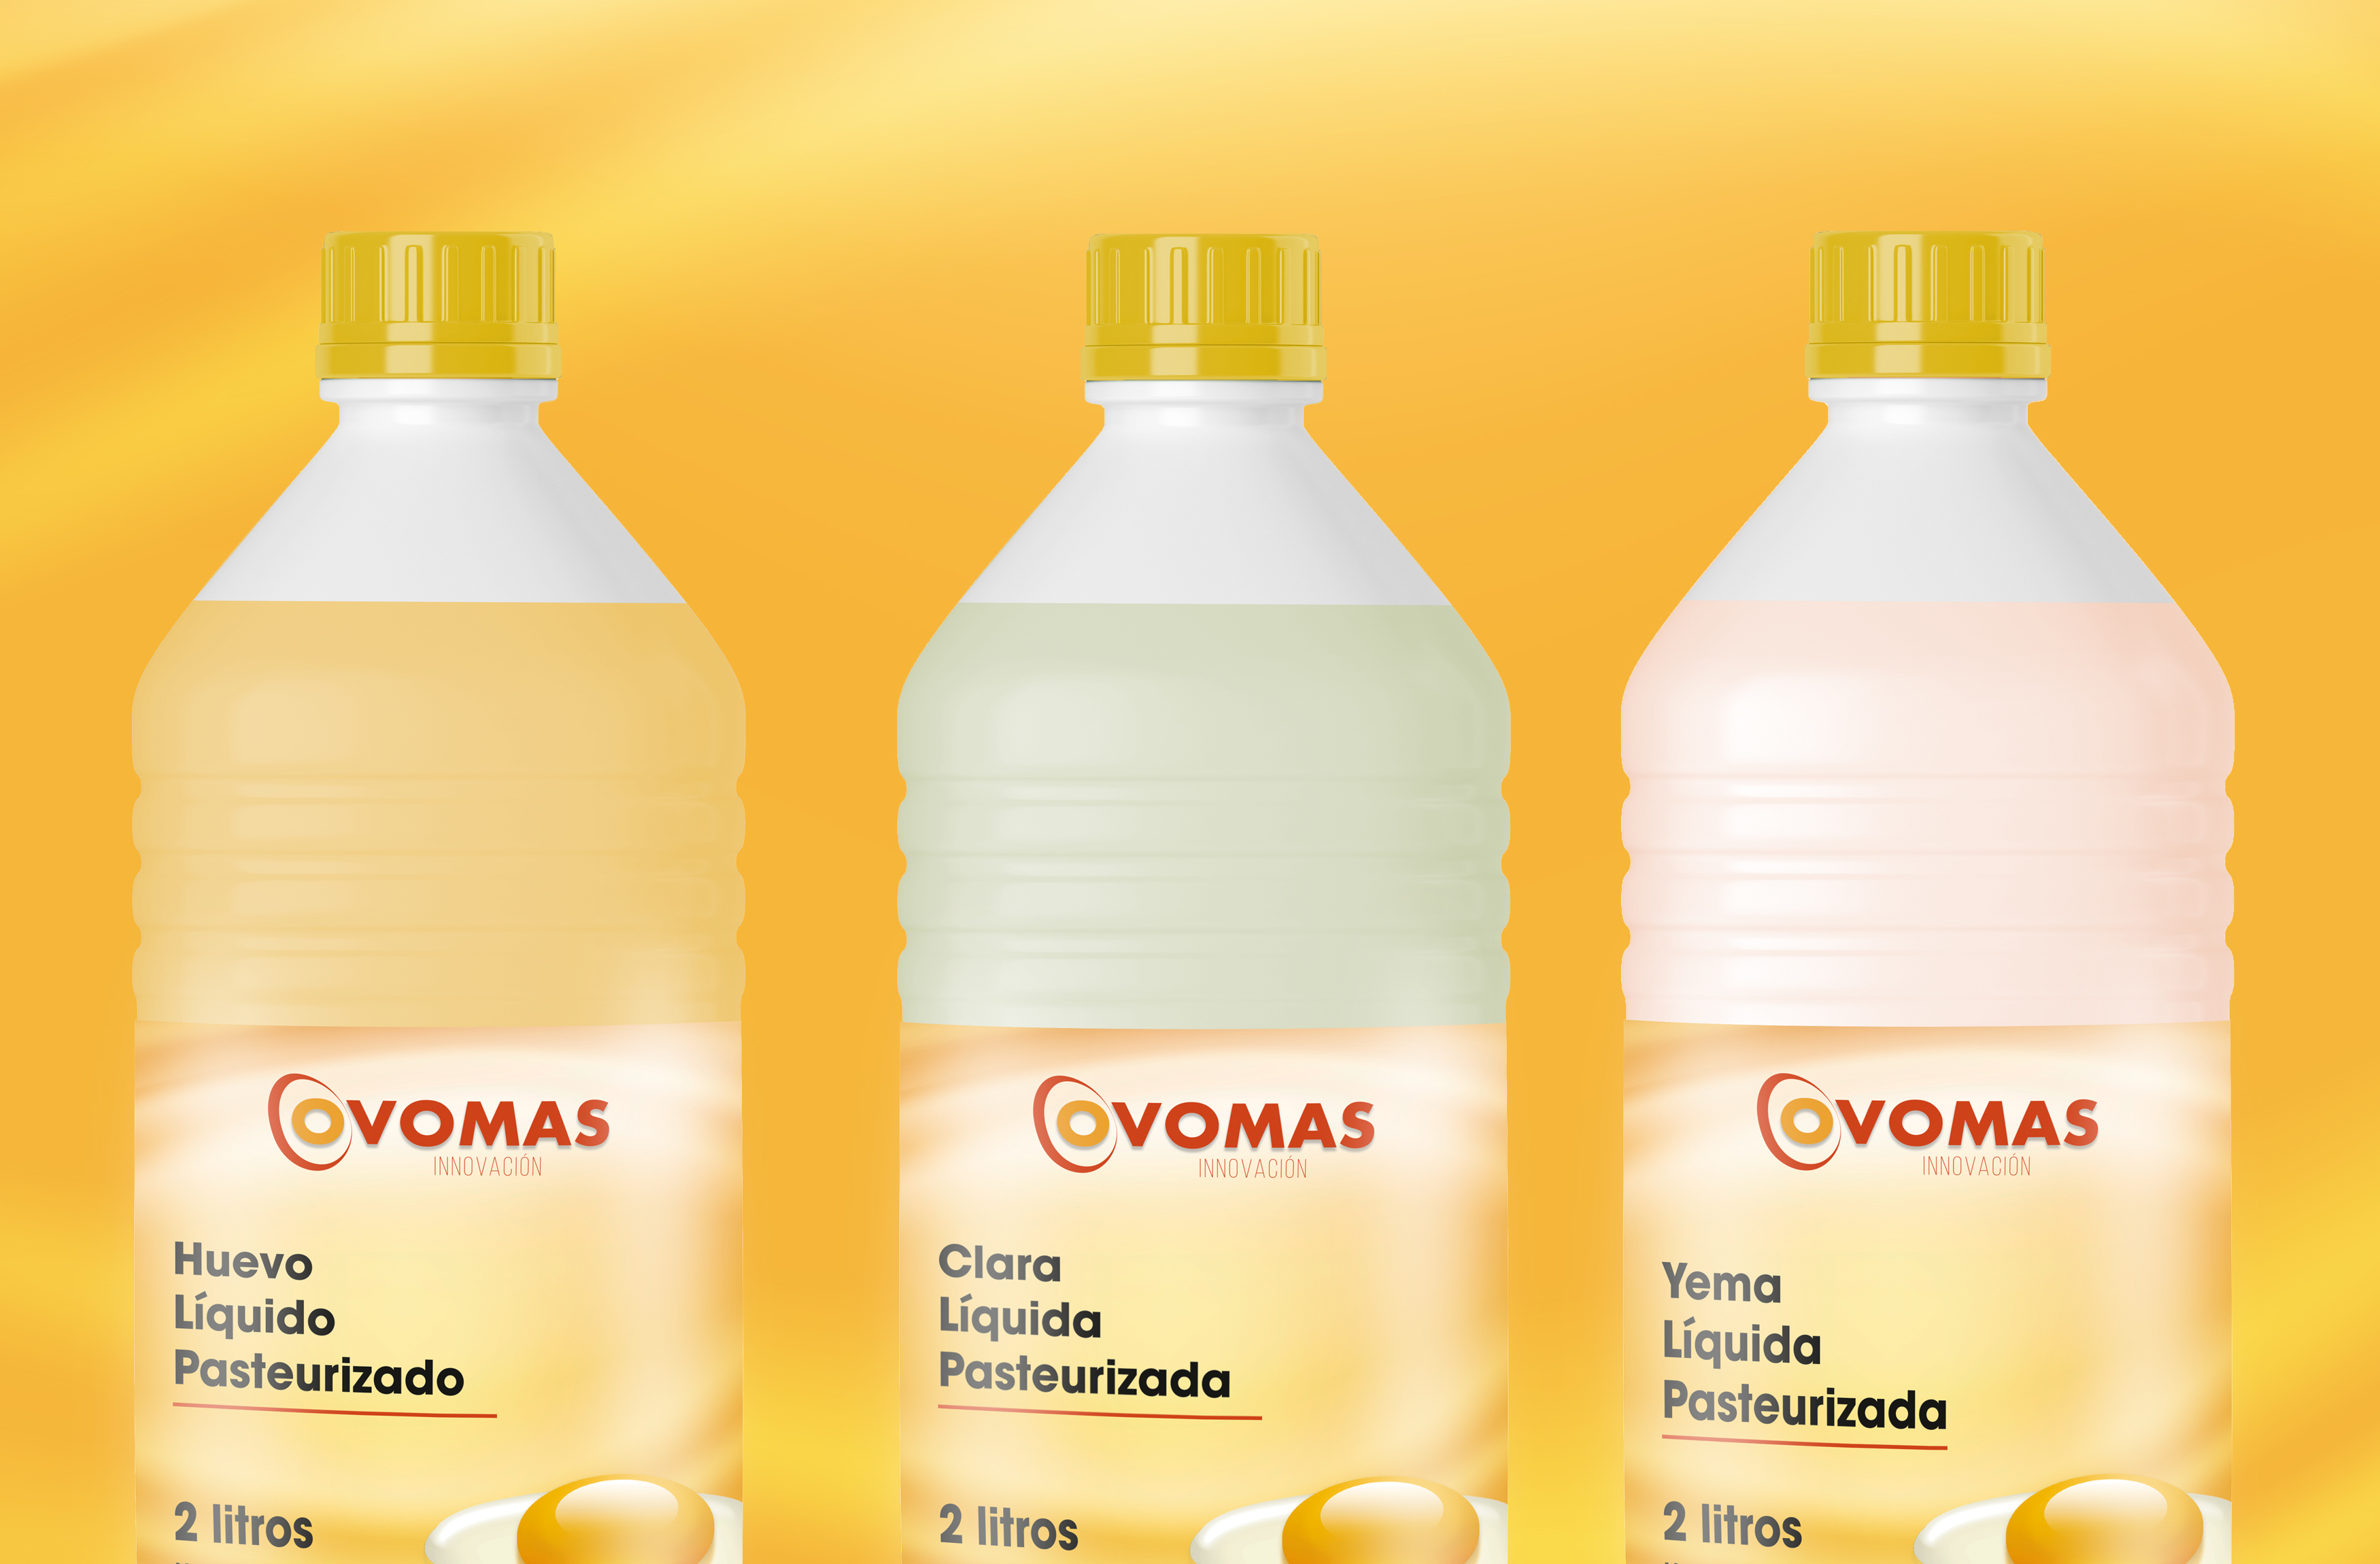 Diseño de marca y diseño de etiquetas para Ovomas